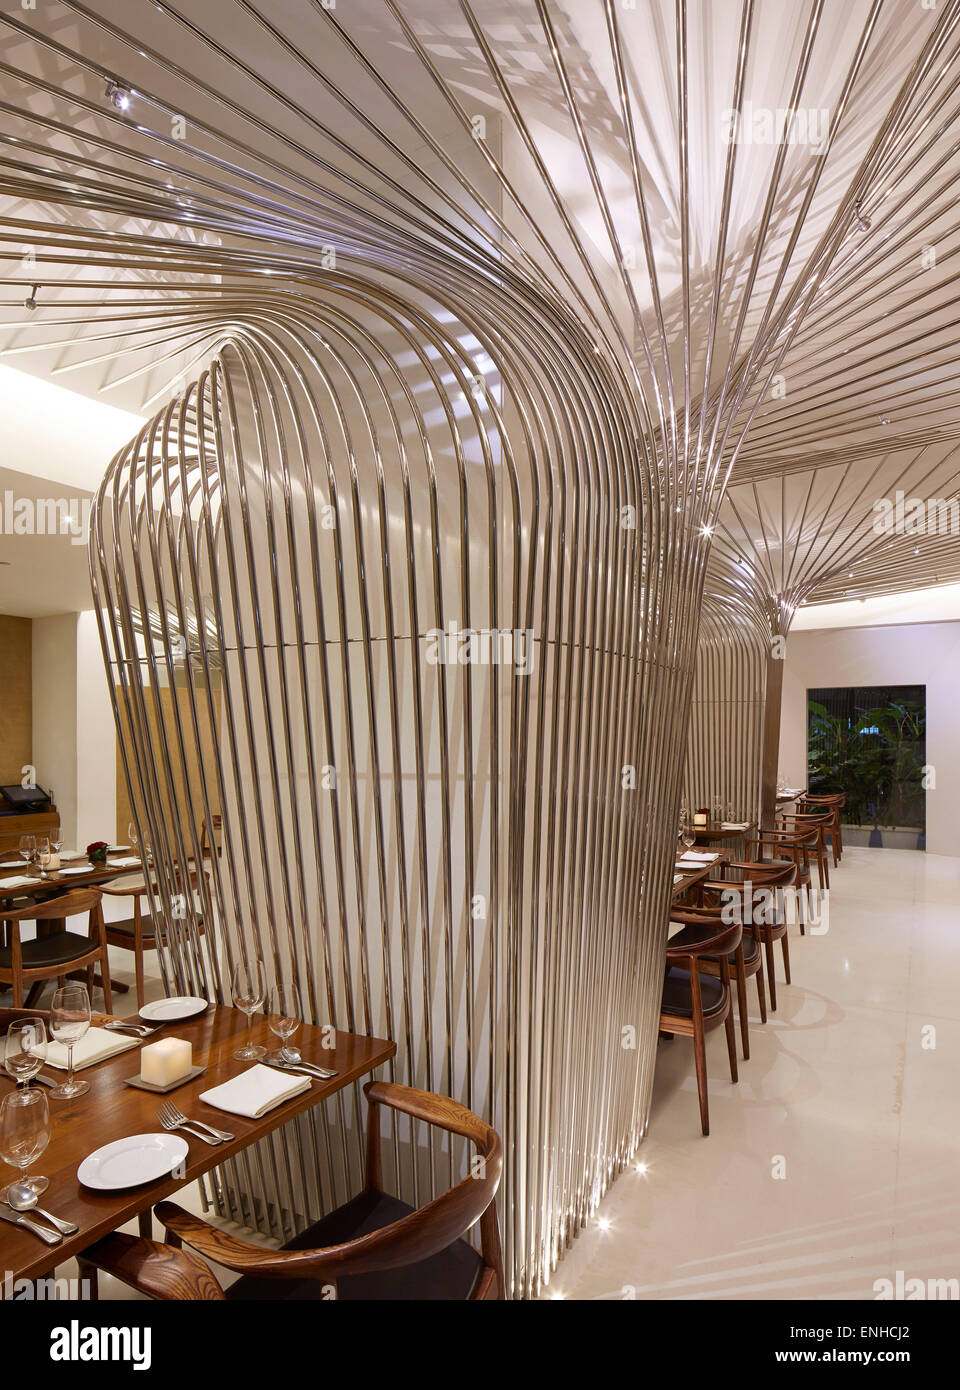 Detaillierte Innenansicht. Tote Bandra Restaurant, Mumbai, Indien. Architekt: SP + A, 2015. Stockfoto